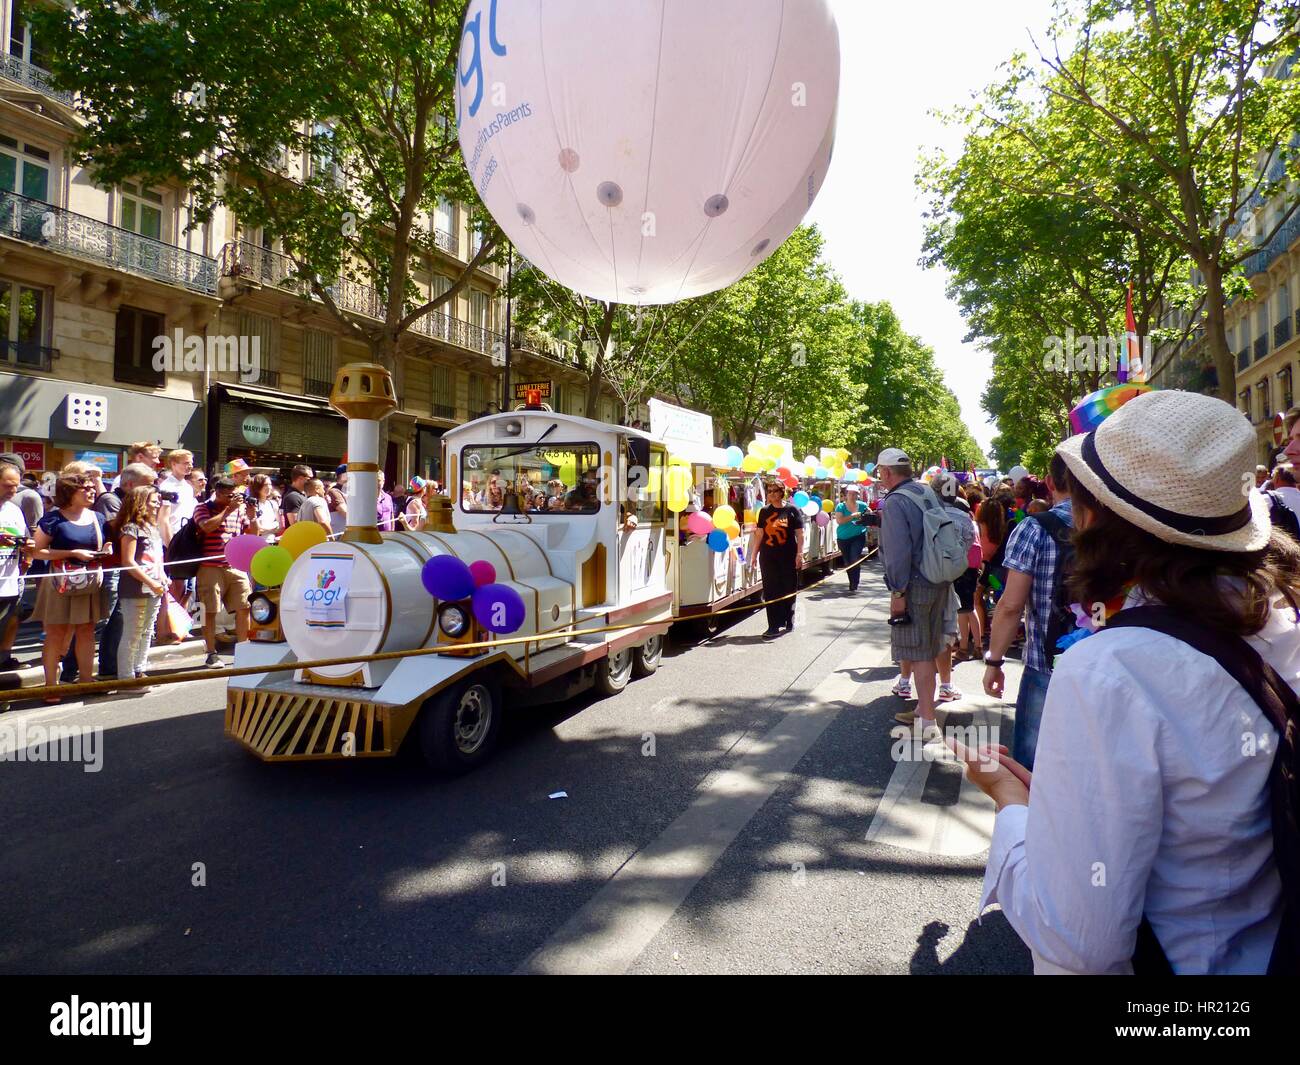 Paris Gay Pride Parade 2015, Marche des Fiertés. Association des Parents Gays et Lesbiennes train touristique 'float' rempli de familles. Paris, France. Banque D'Images